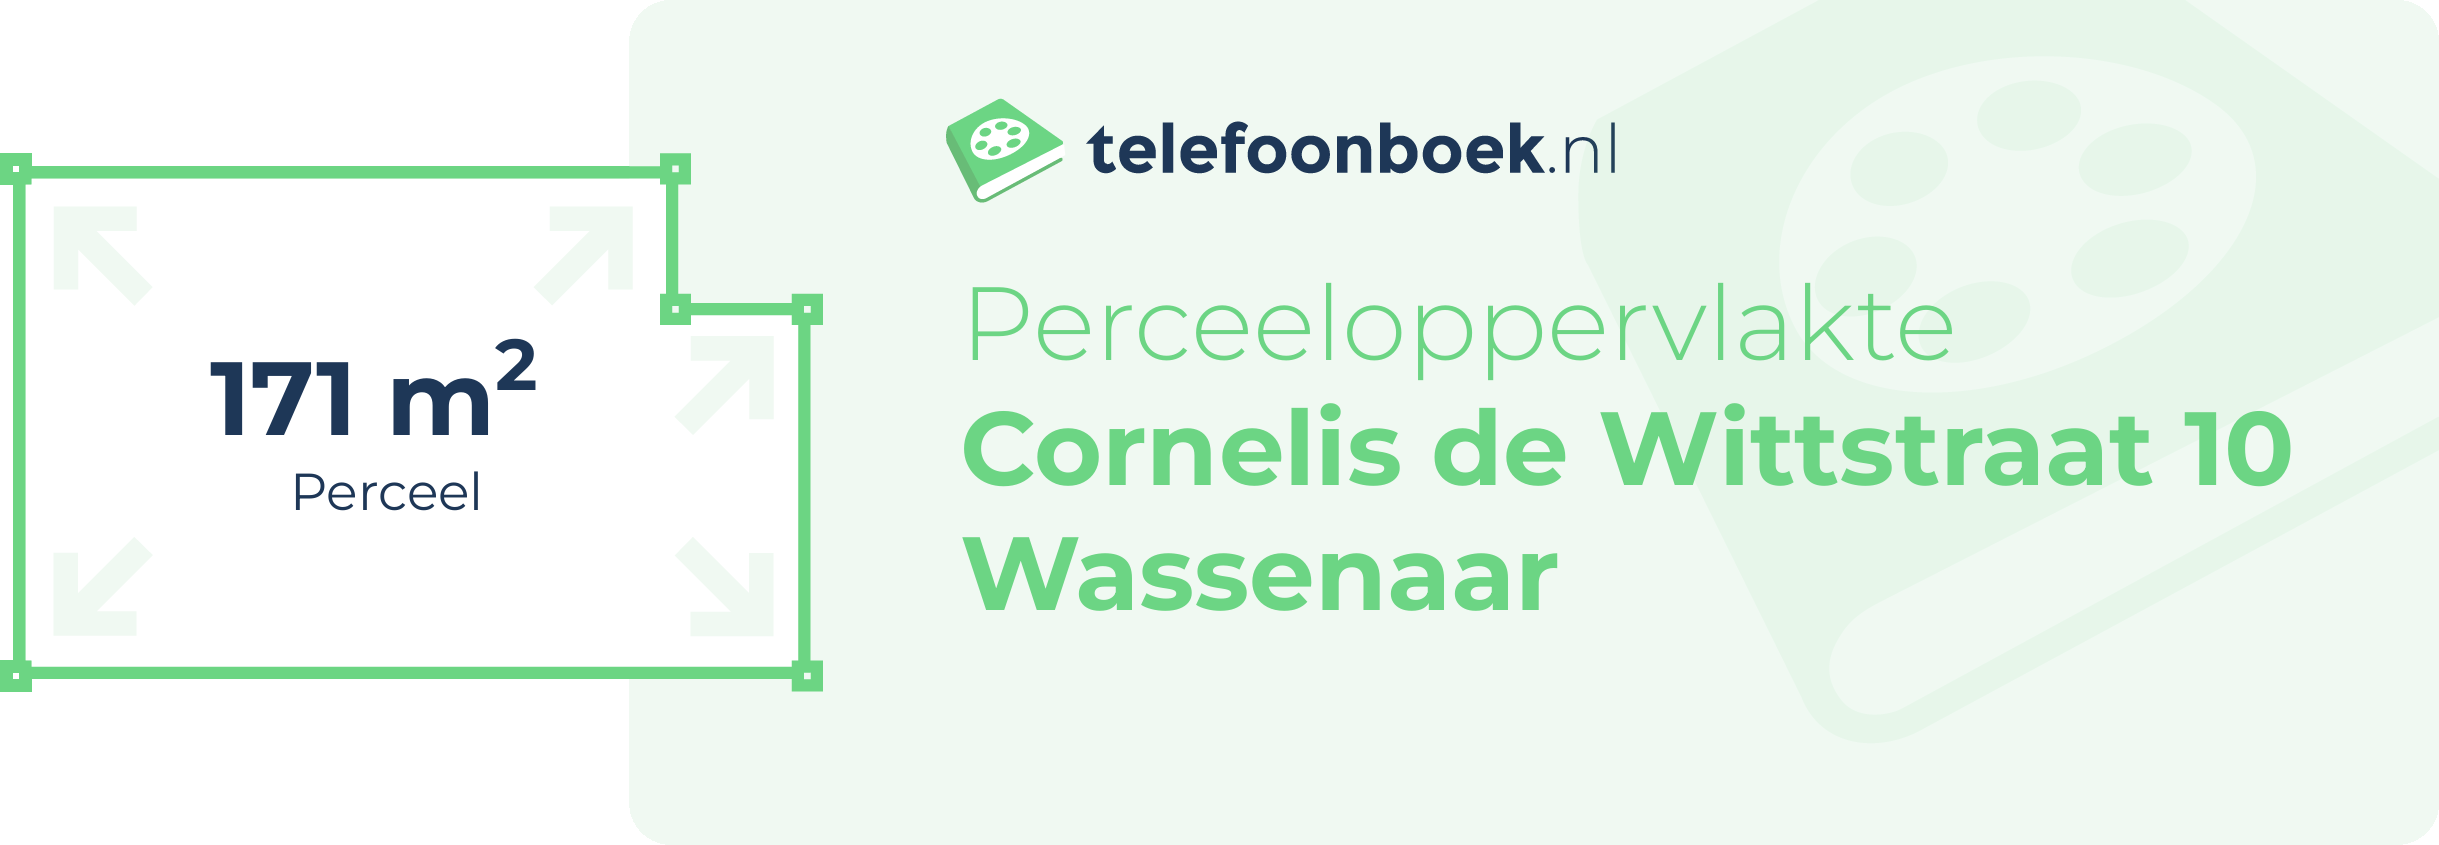 Perceeloppervlakte Cornelis De Wittstraat 10 Wassenaar